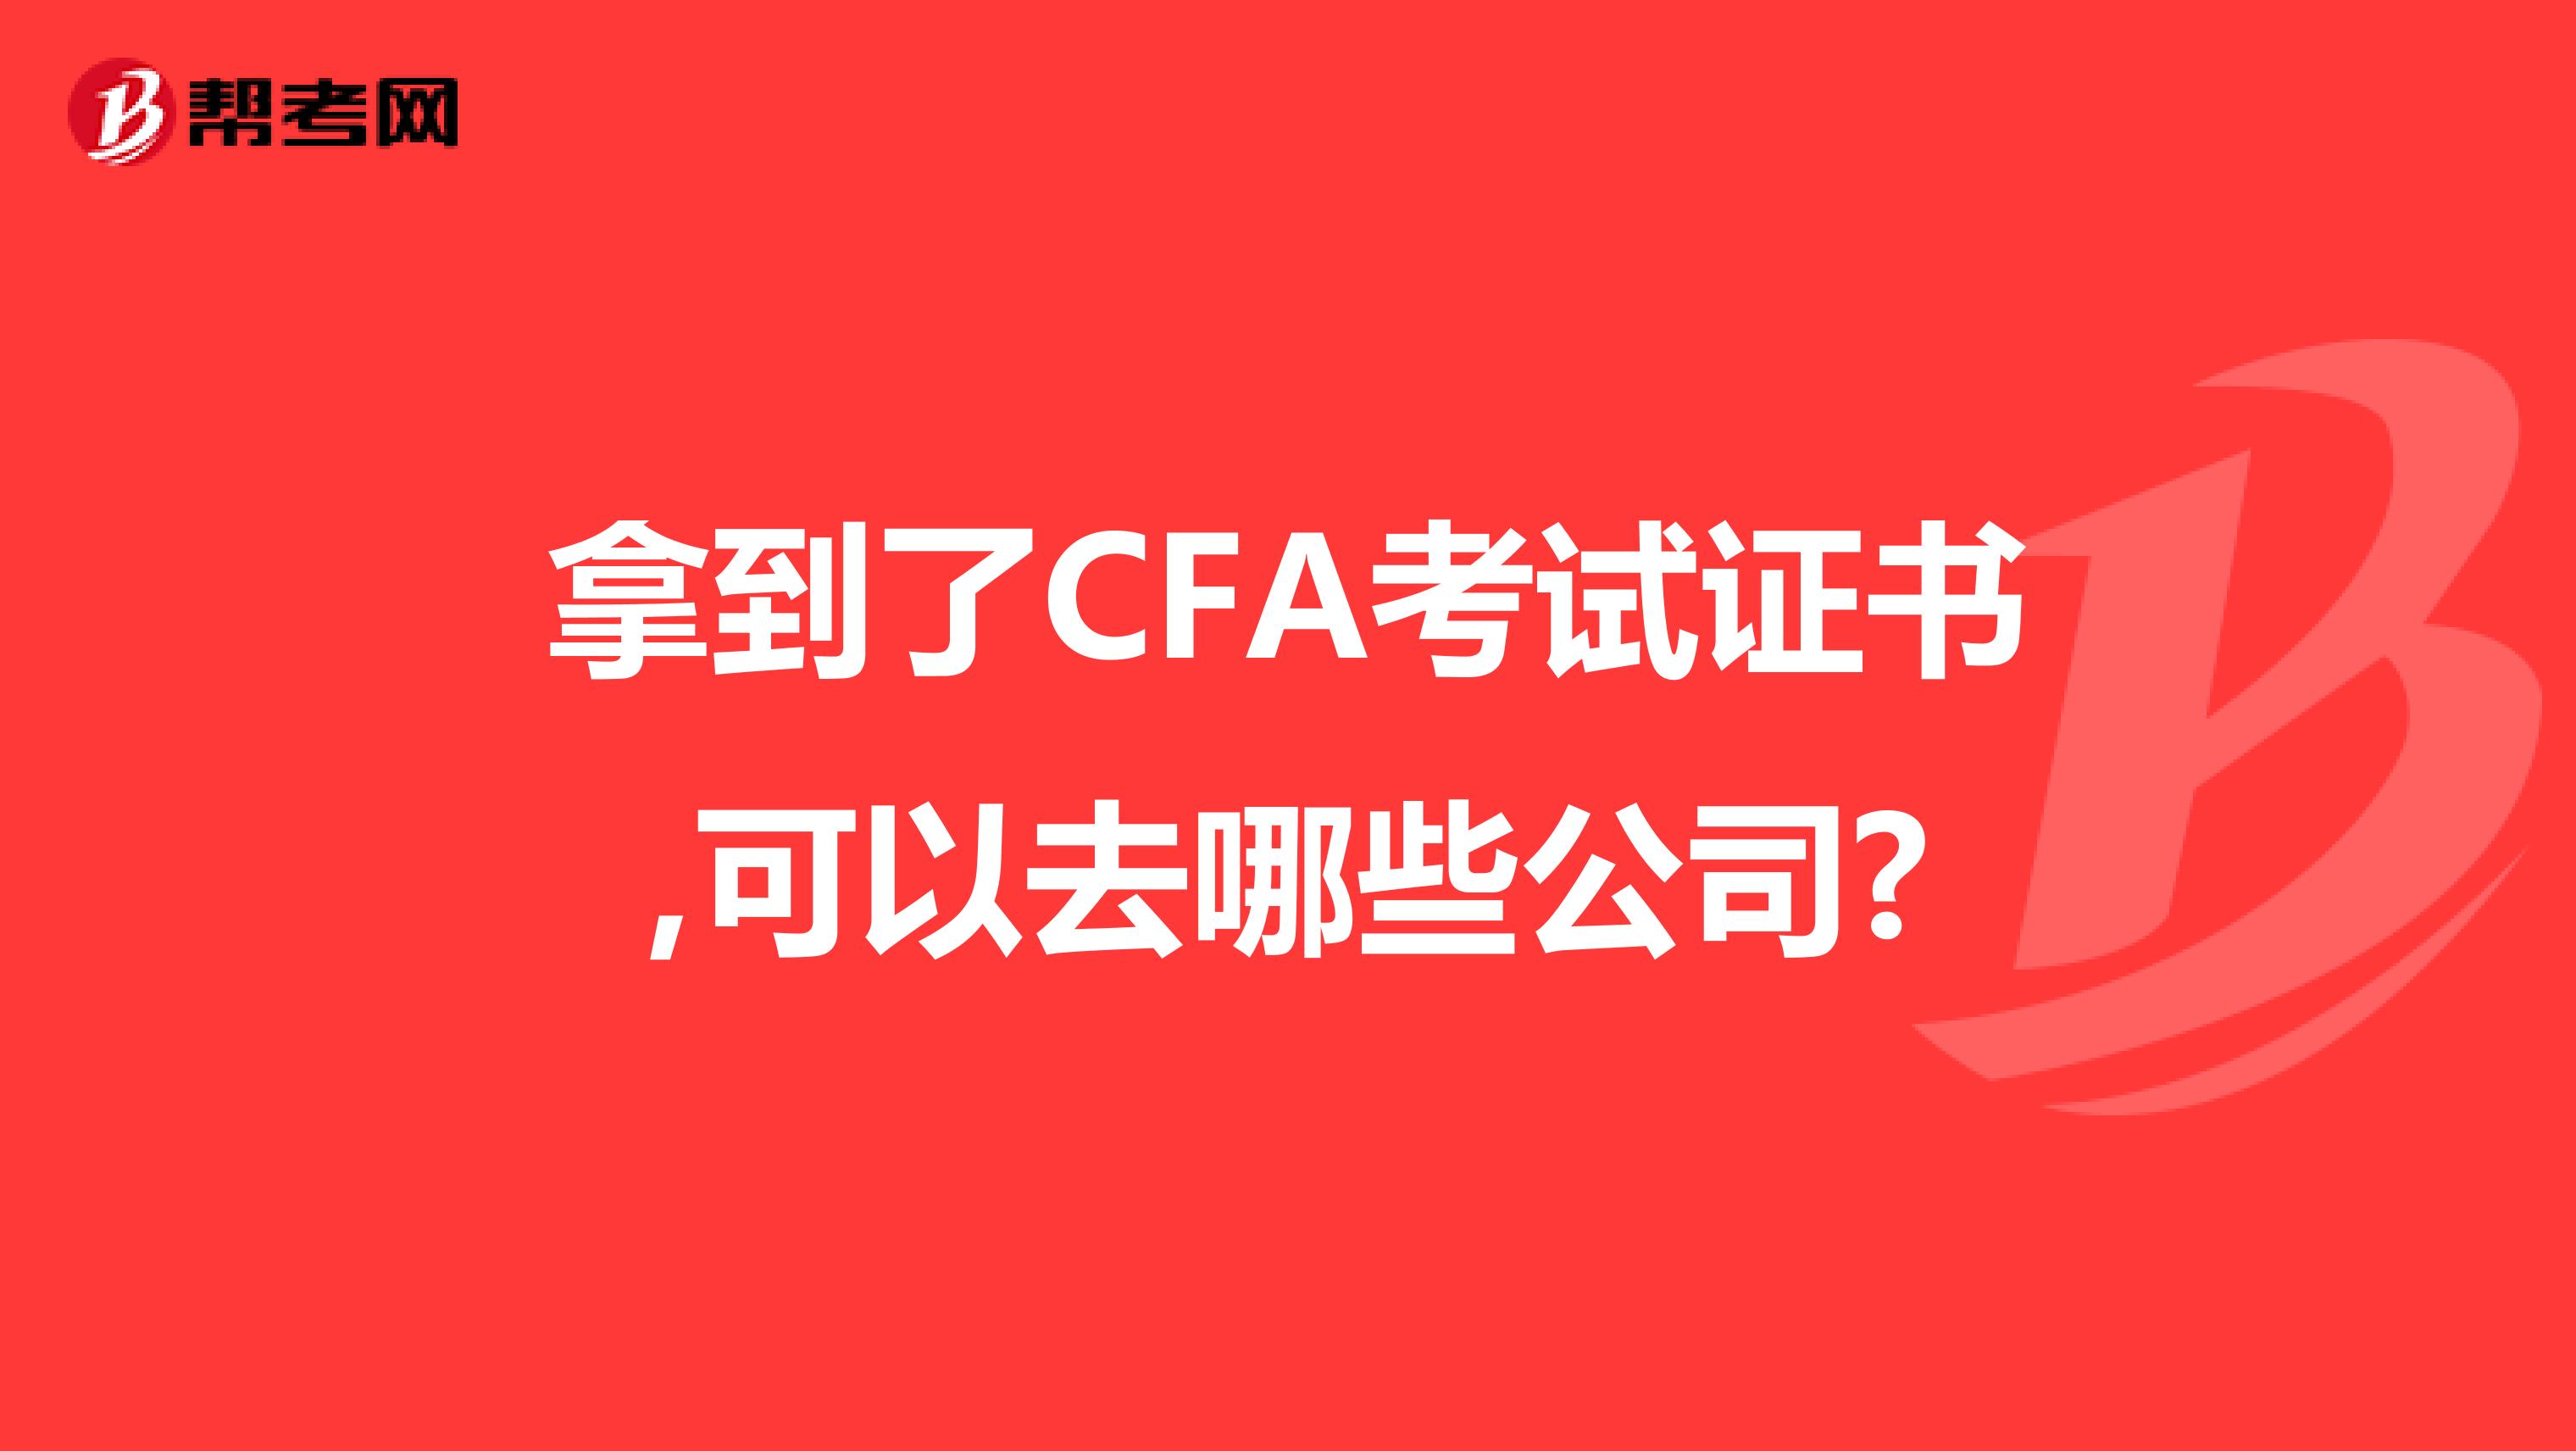 拿到了CFA考试证书,可以去哪些公司?